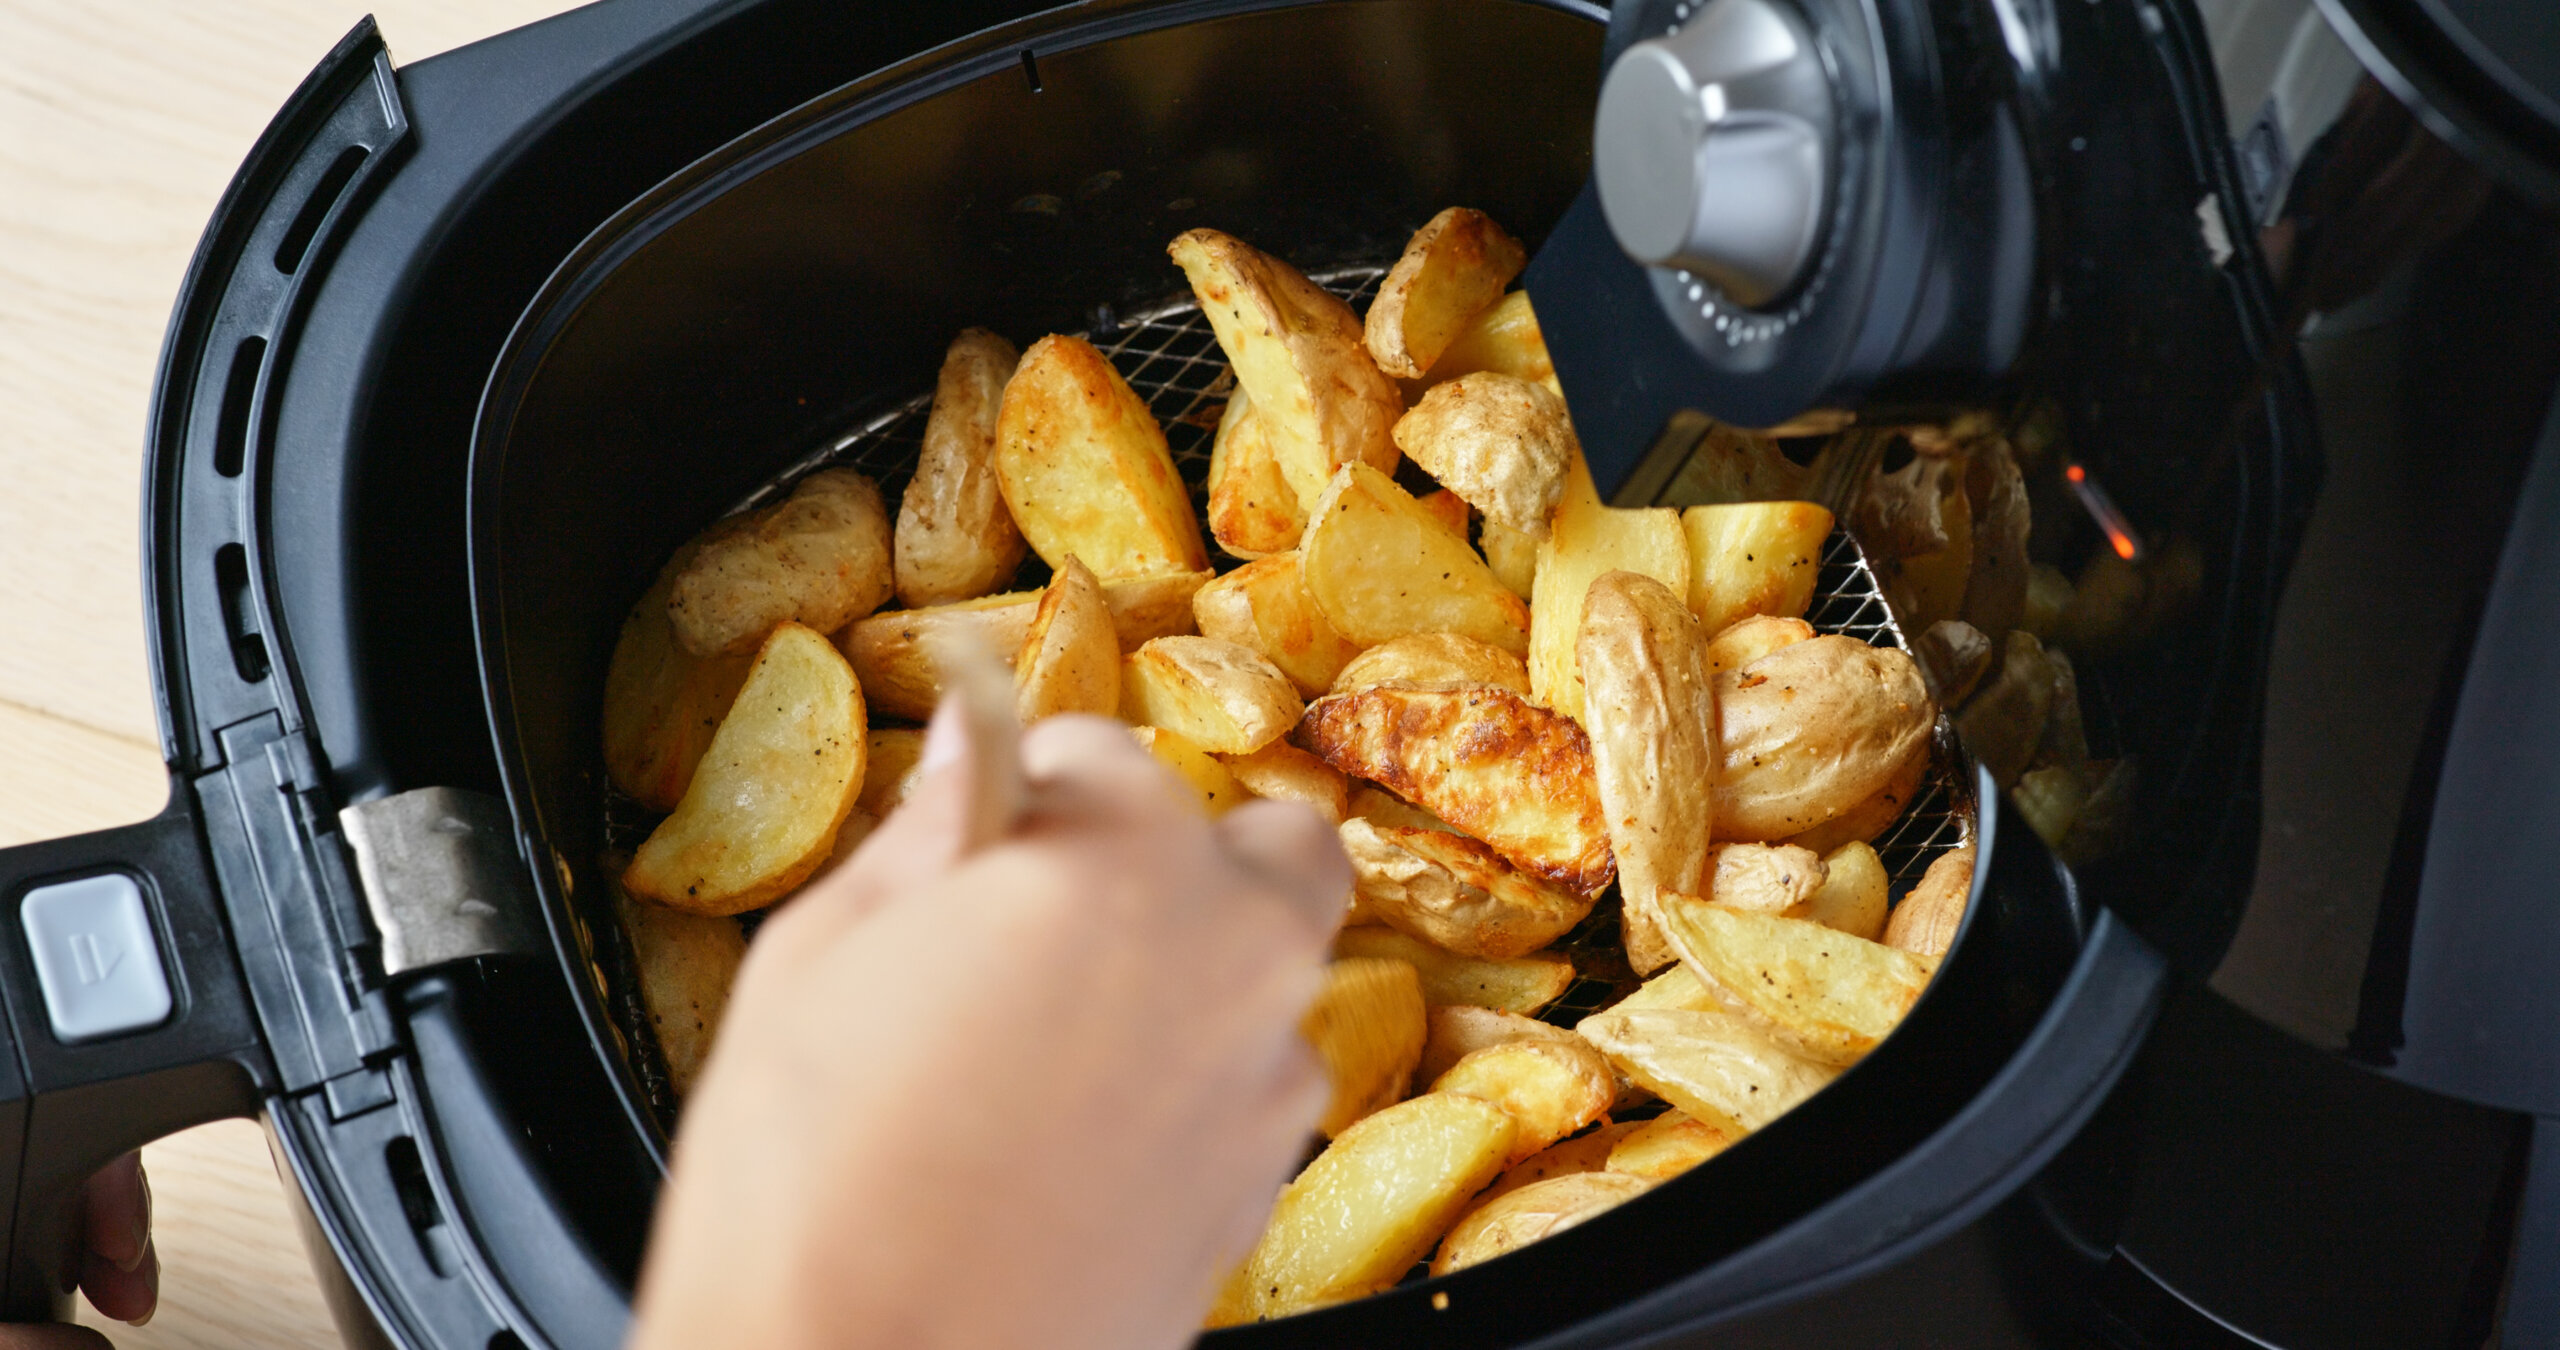 Cuocere le patate nella friggitrice ad aria - Fatto in casa da